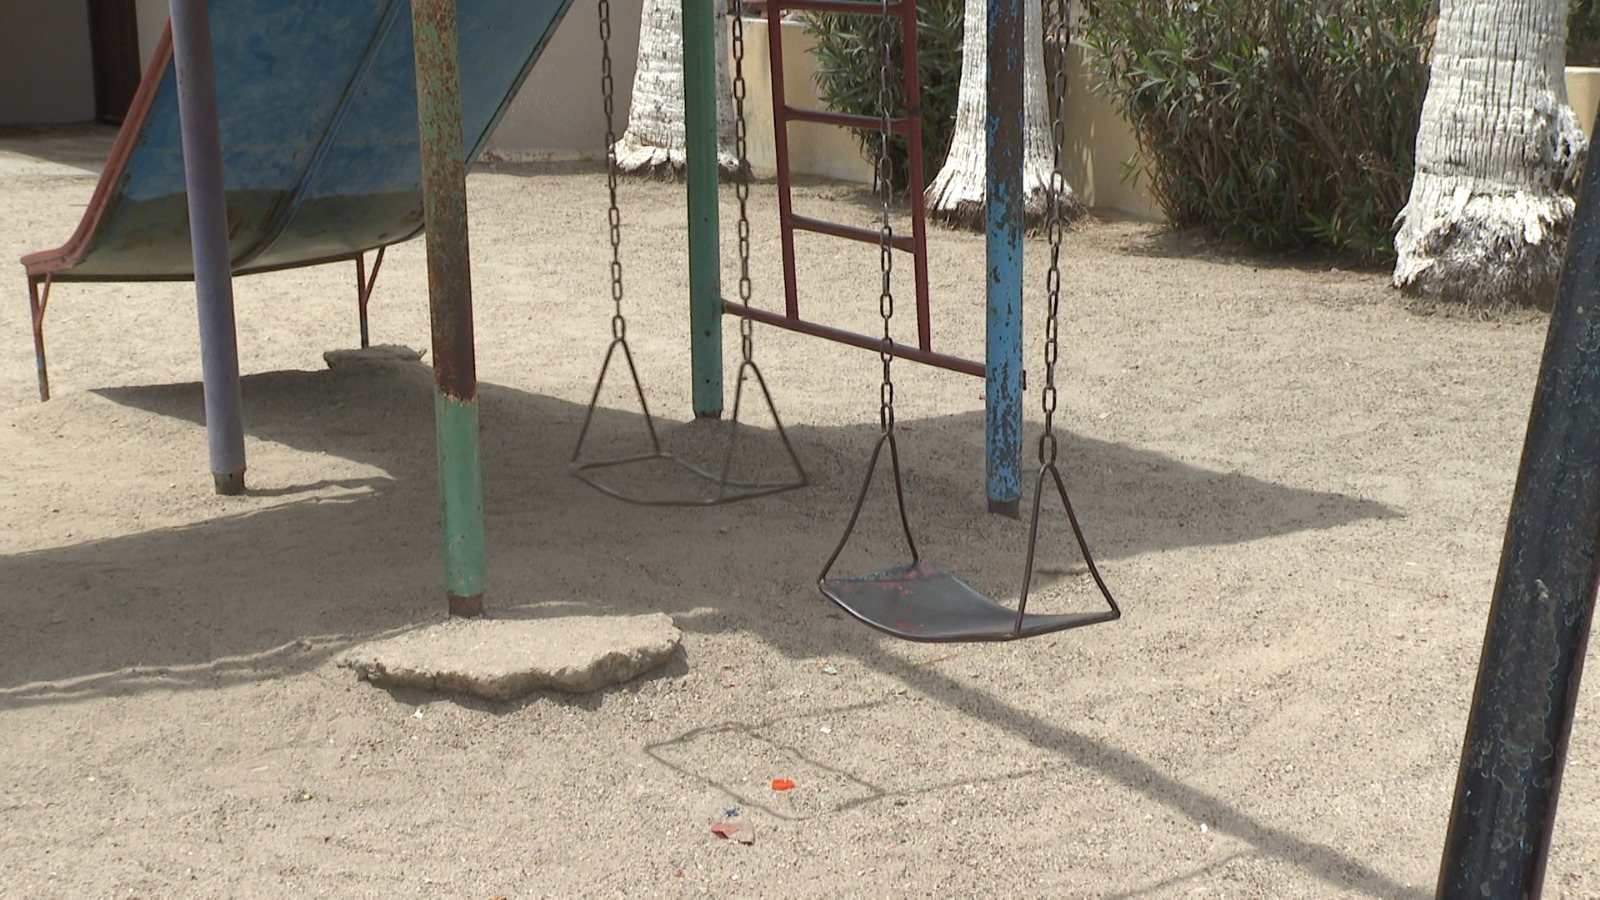 Cancha de futbol "Conasupo" en El Zacatal pone en riesgo a niños y jóvenes